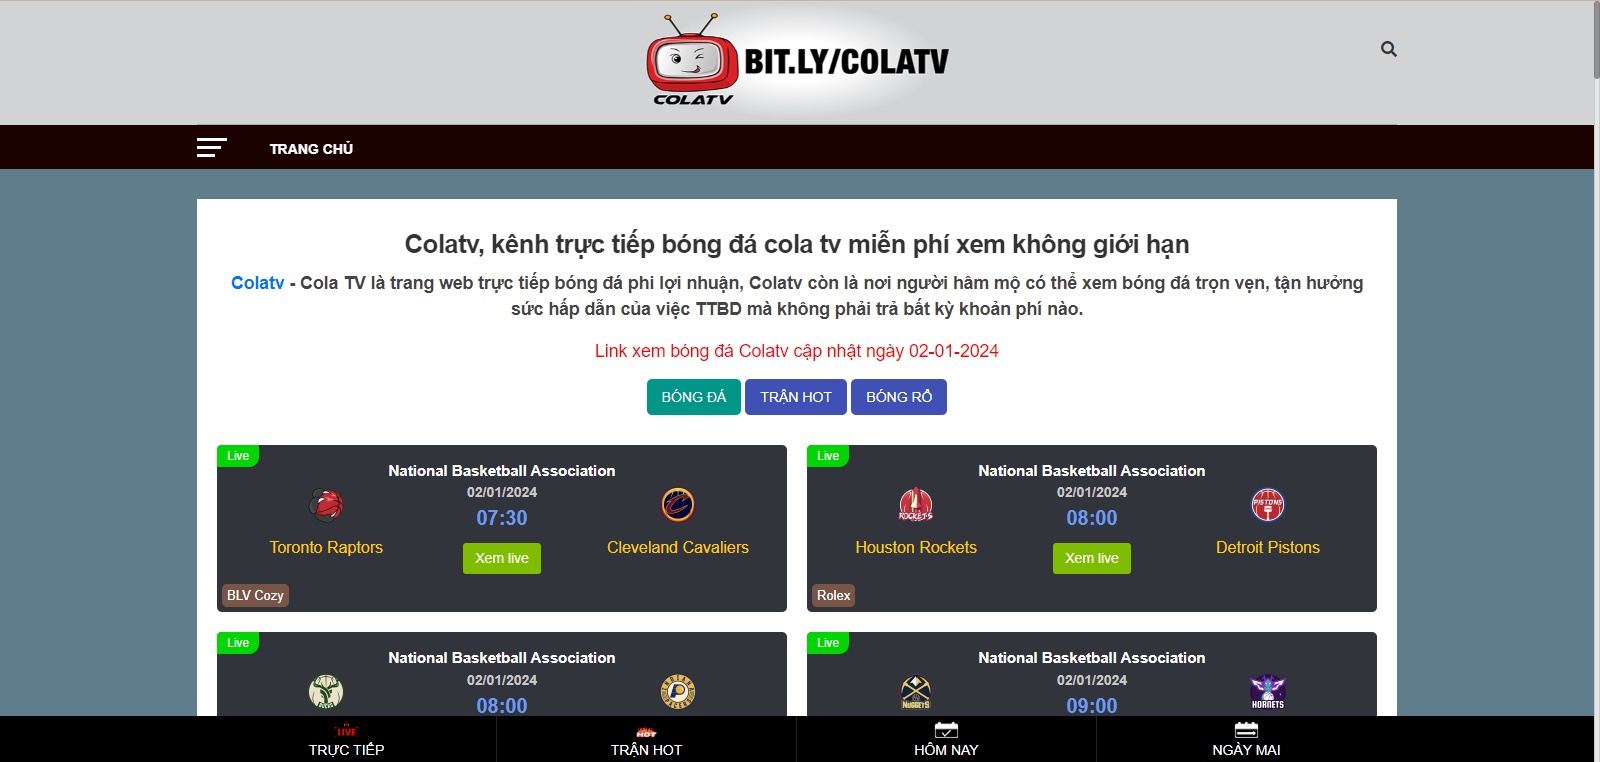 ColaTV - Trang web trực tiếp bóng đá sắc nét, sống động